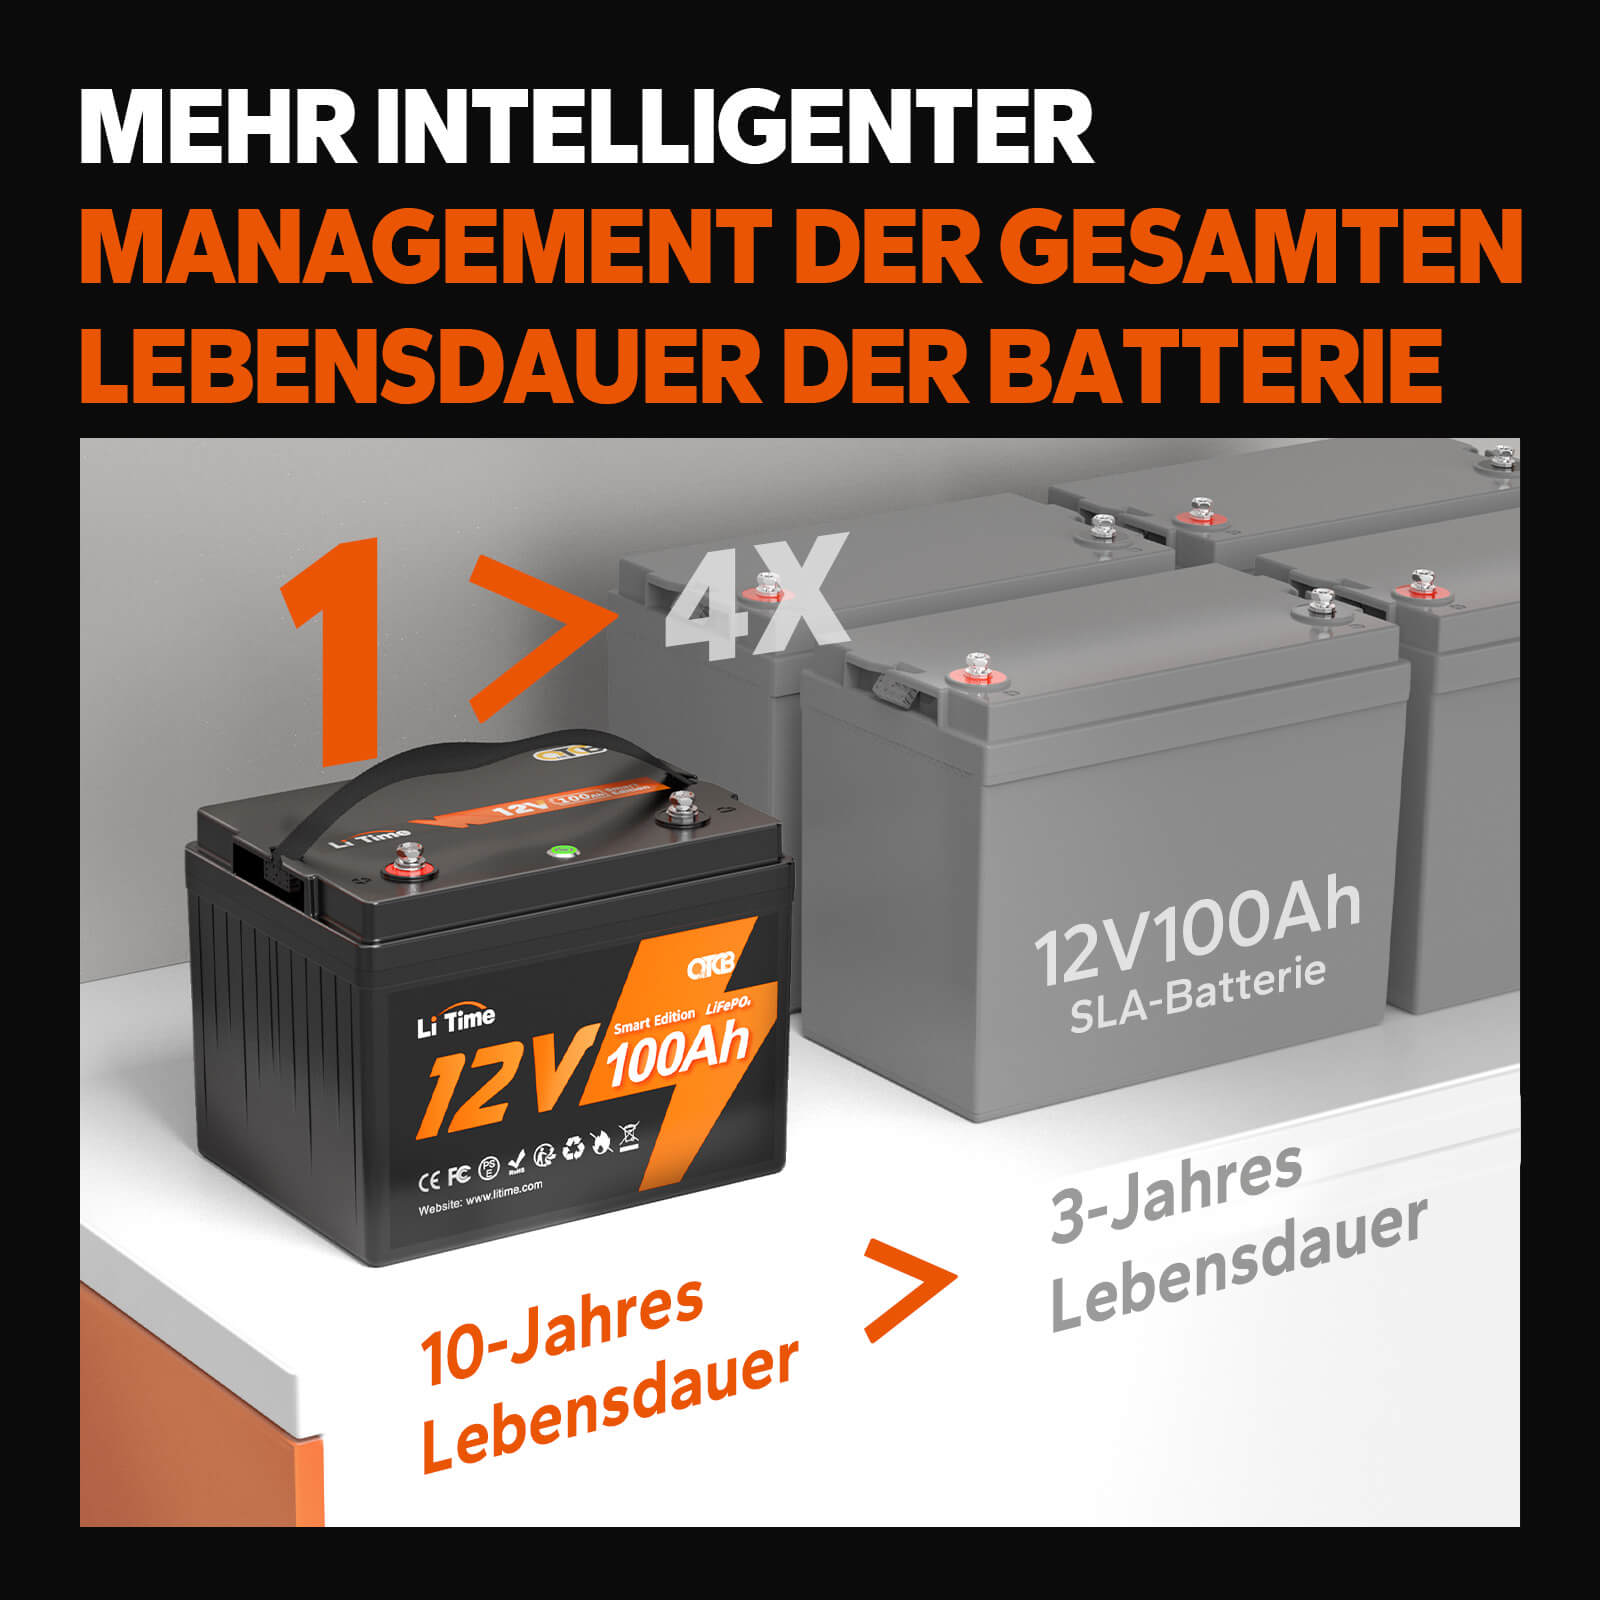 【0% IVA】Batería LiTime 12V 100Ah Smart Lithium LiFePO4 (SOLO para edificios residenciales y SOLO en DEU - Solo para clientes en Alemania)